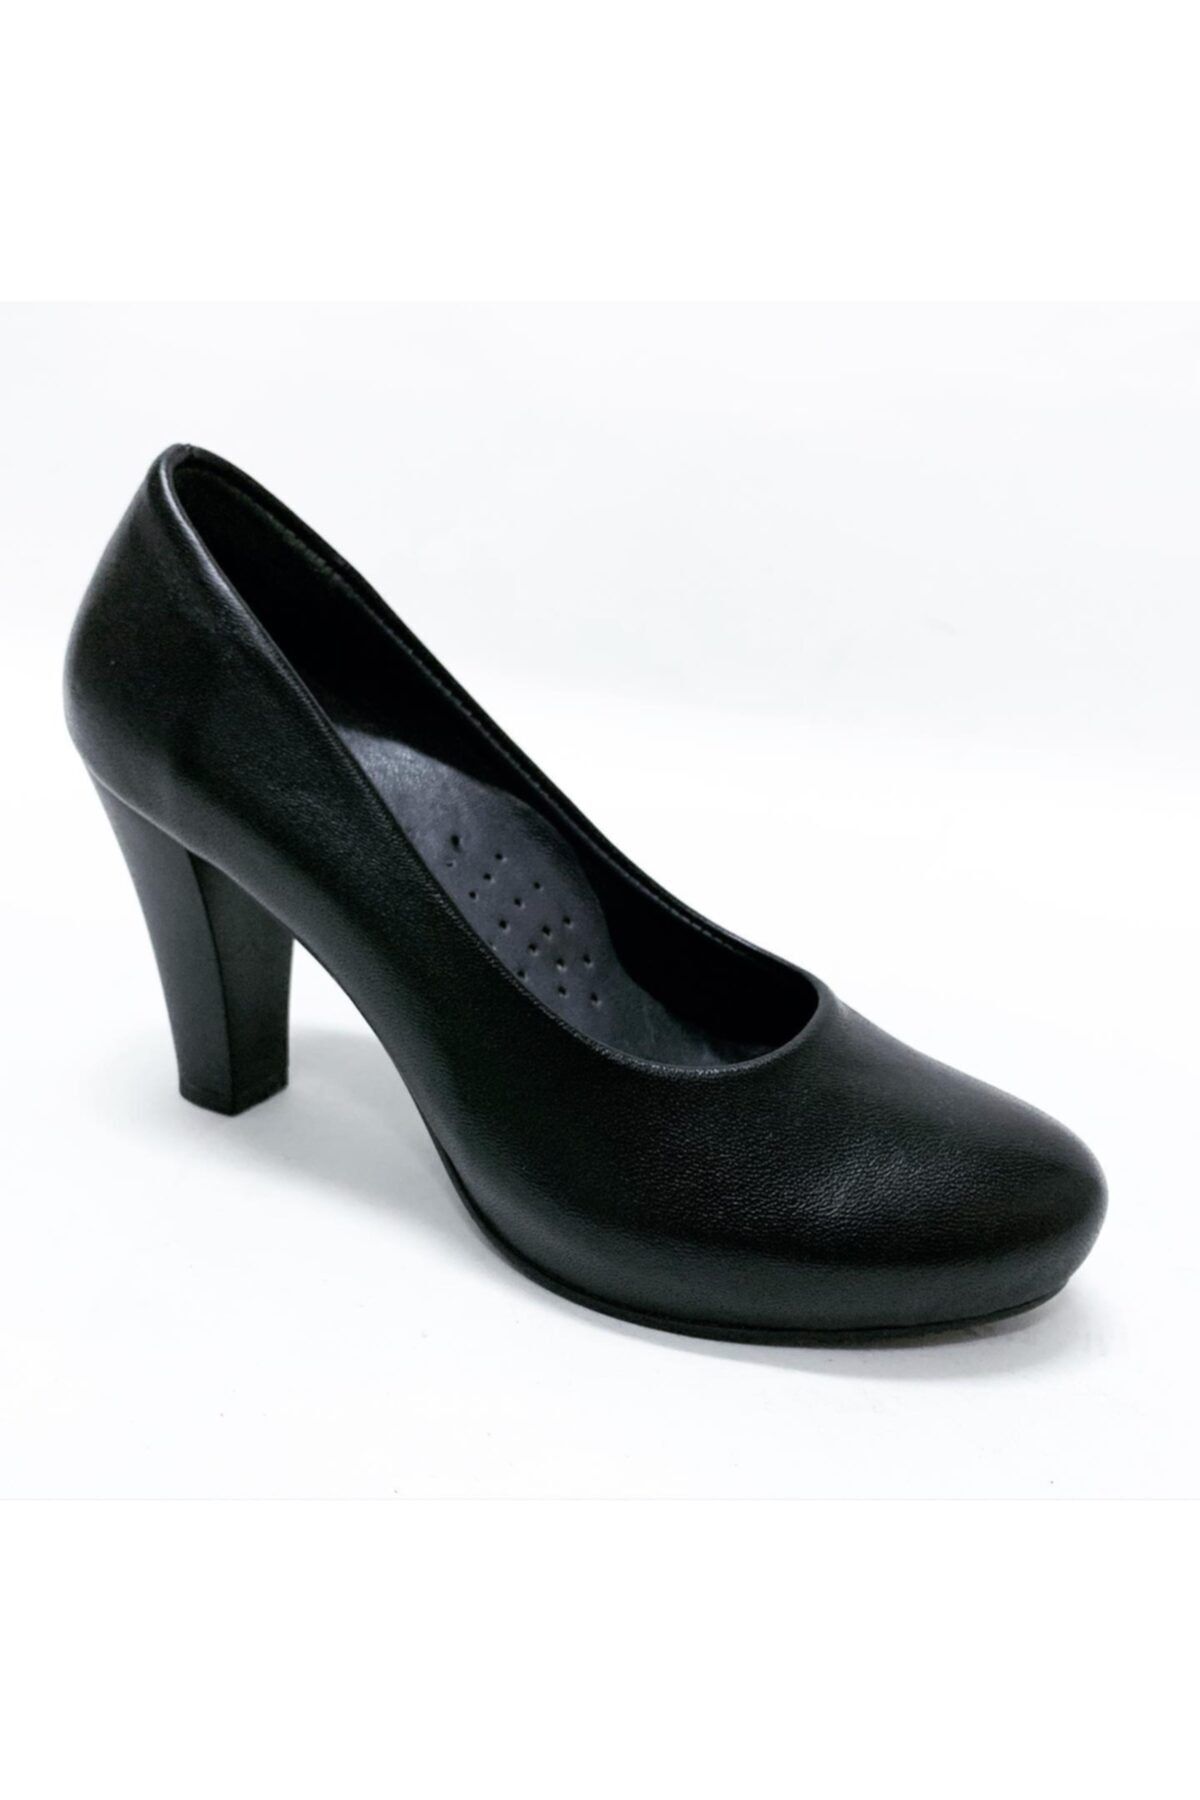 stok83 Kadın Siyah Hakiki Deri Stiletto Platform Ayakkabı